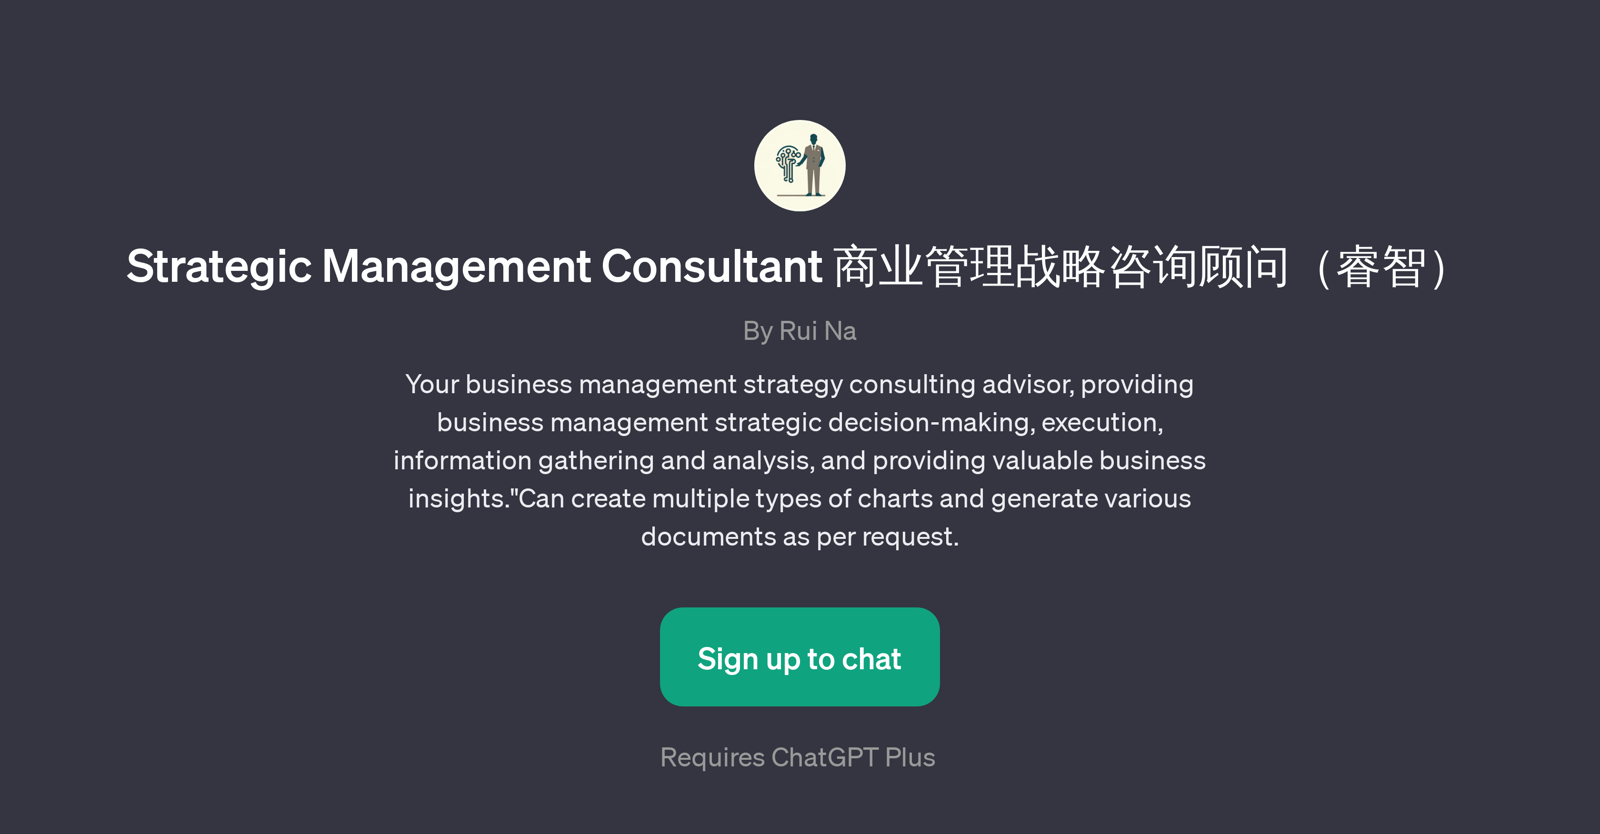 Strategic Management Consultant website